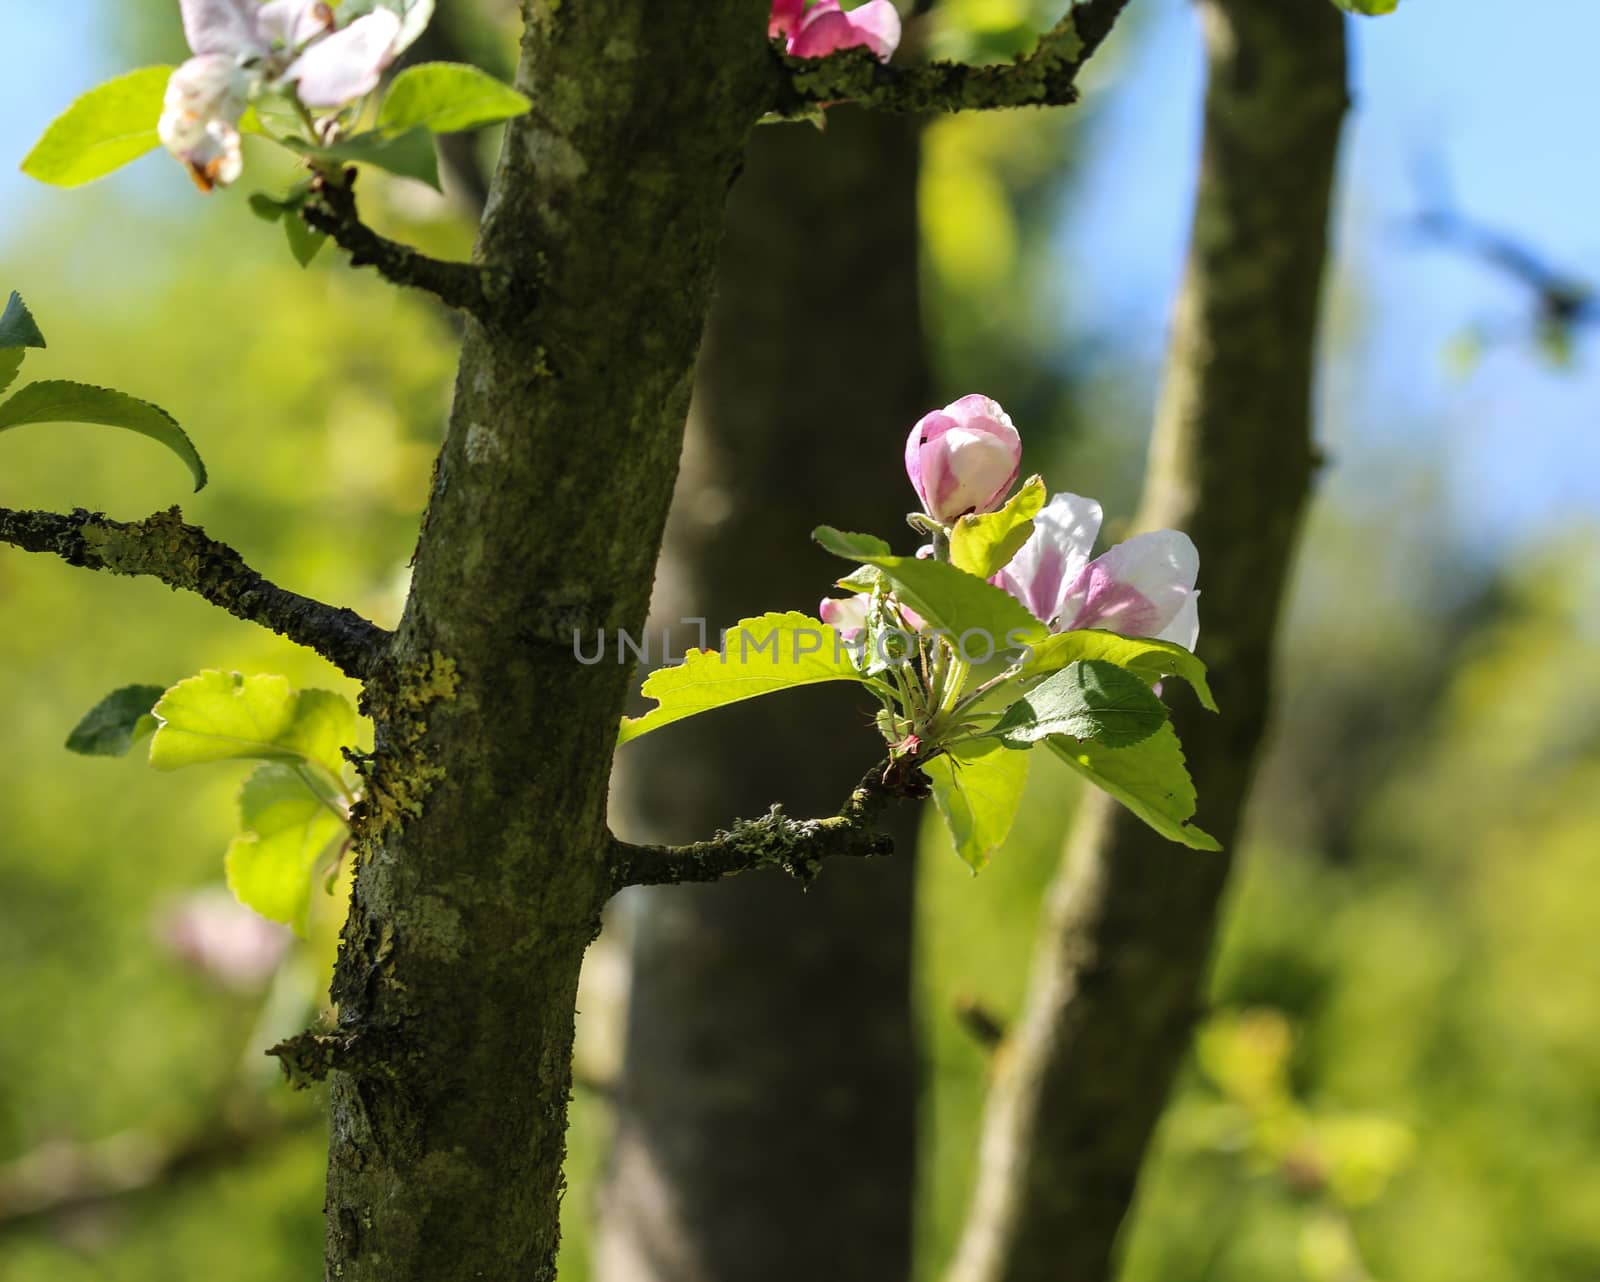 European crab apple (Malus sylvestris) tree flower, blooming in spring by michaelmeijer